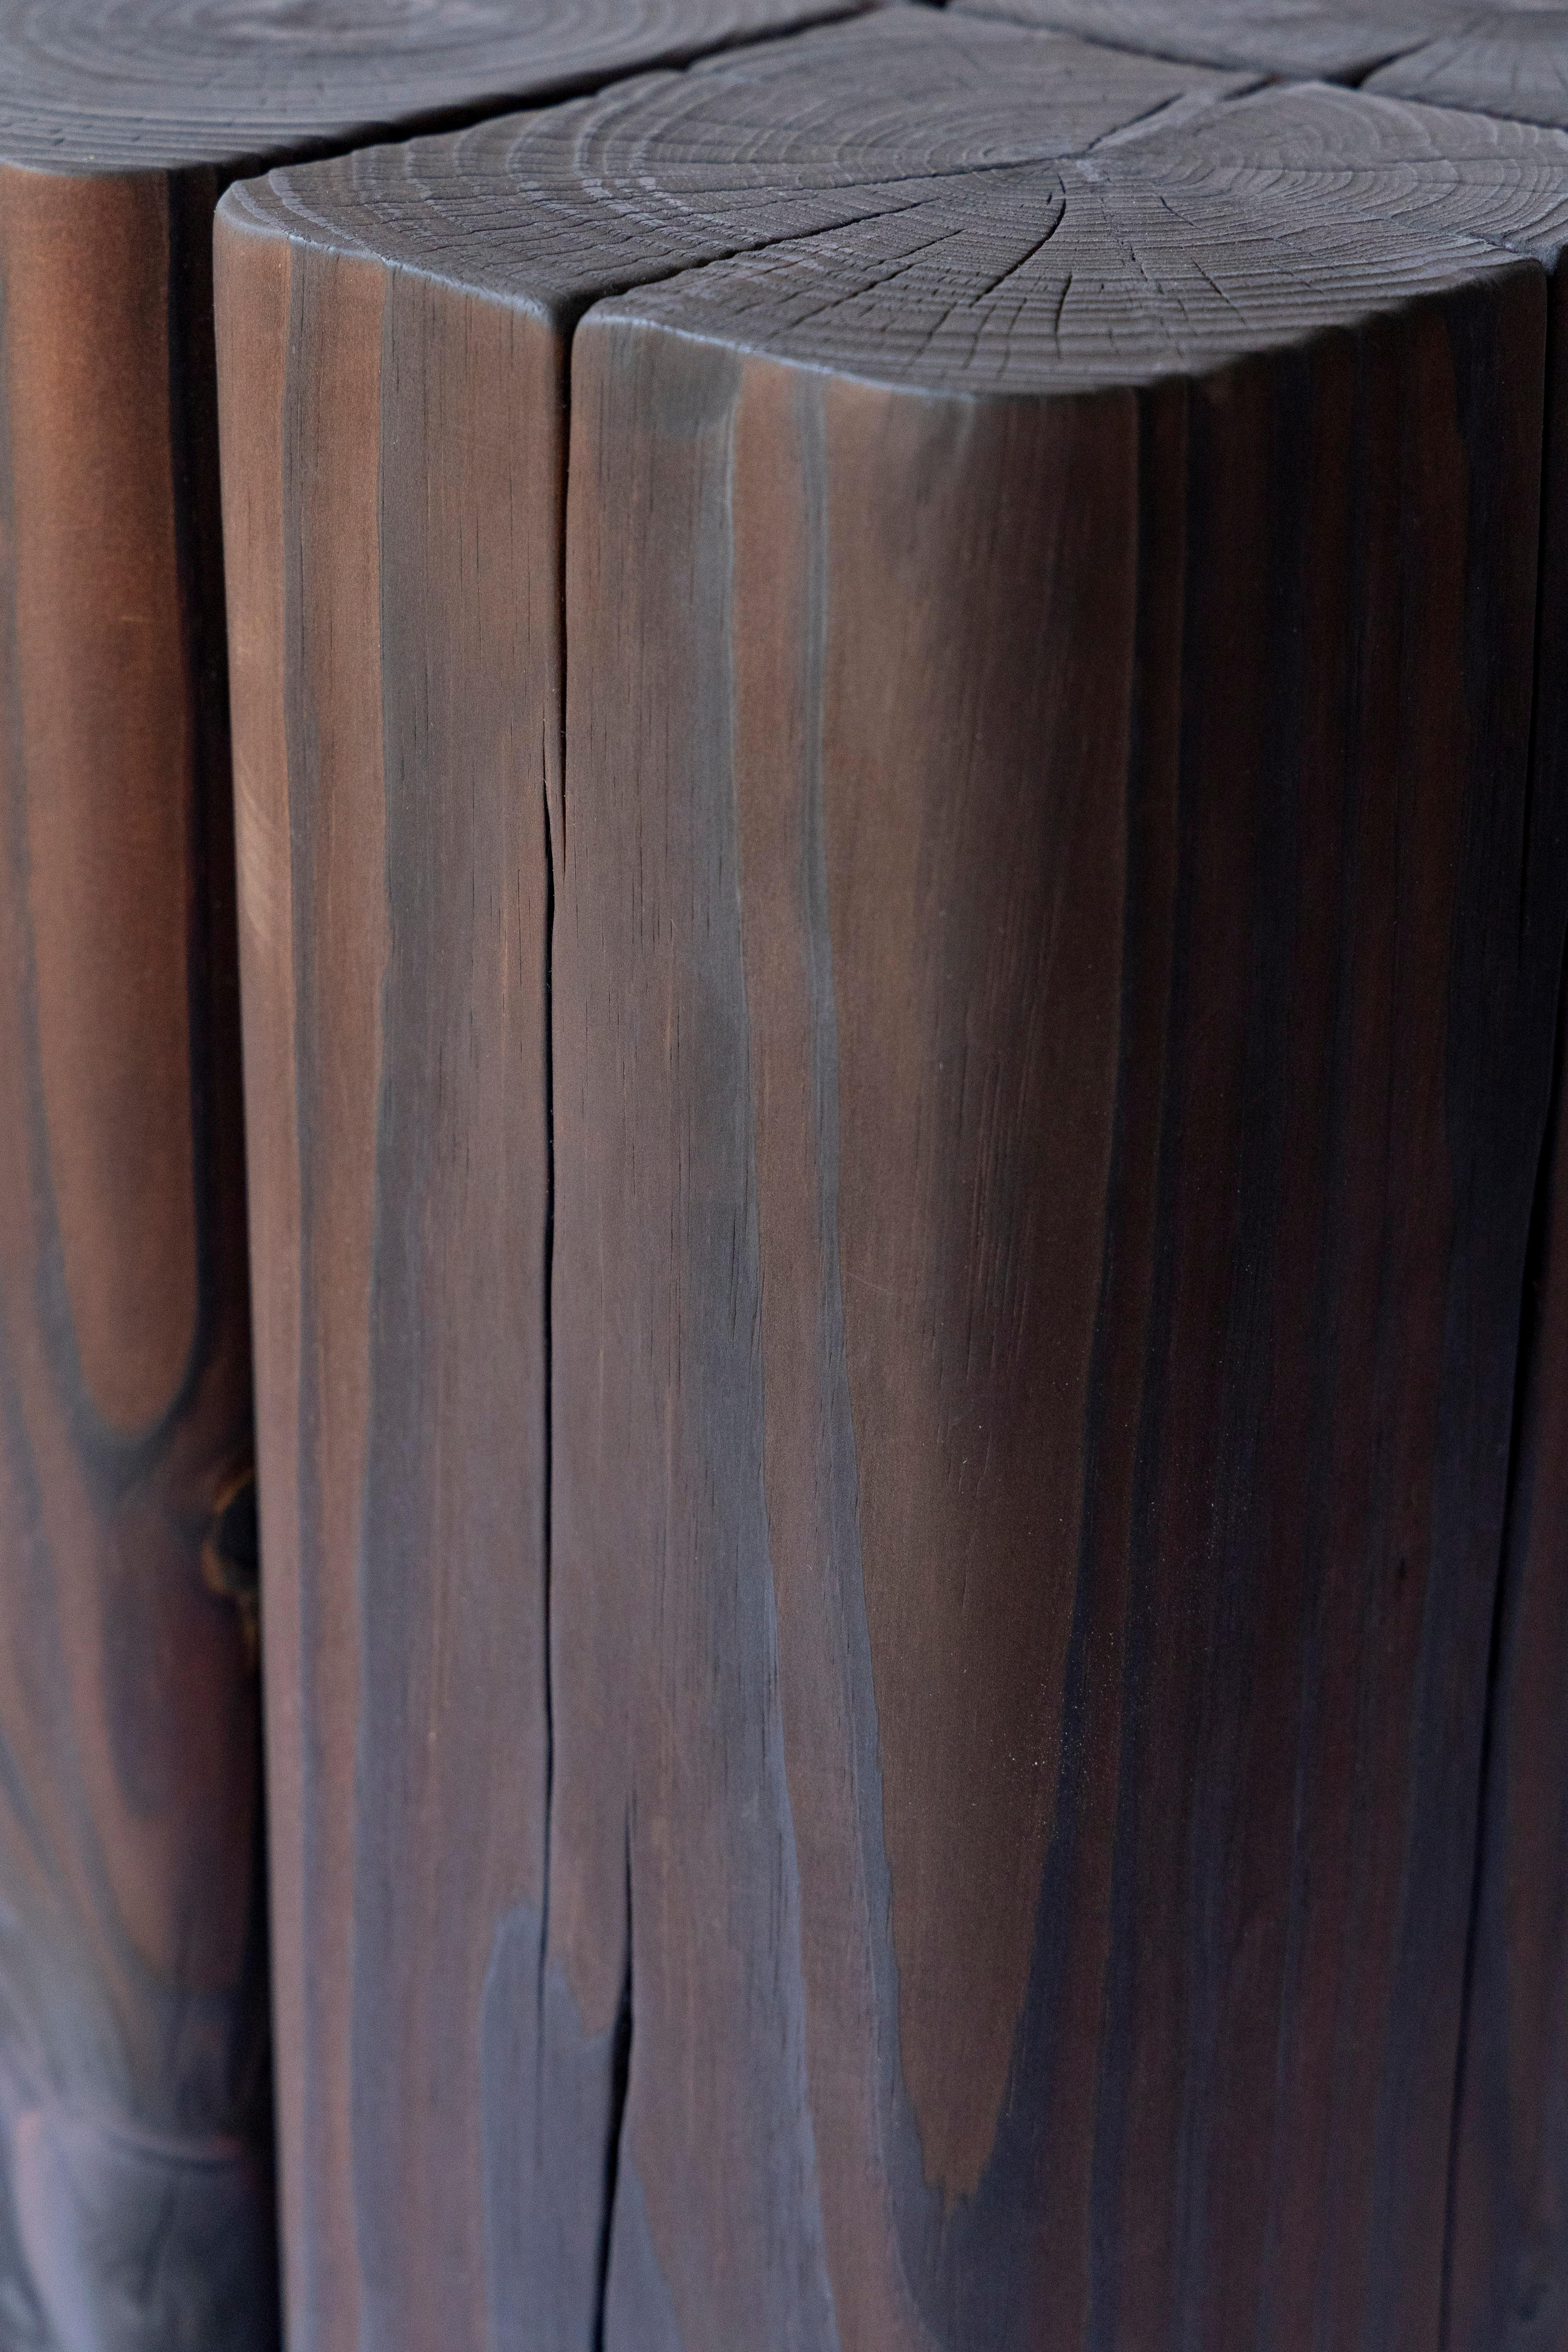 Der Beistelltisch Timber wird aus 6×6 Abschnitten der östlichen Weißkiefer hergestellt, die aus Abschnitten des architektonischen Holzrahmenbaus gewonnen wurden. Das Holz kommt grün an und wird sorgfältig geformt und zu diesem robusten Tisch